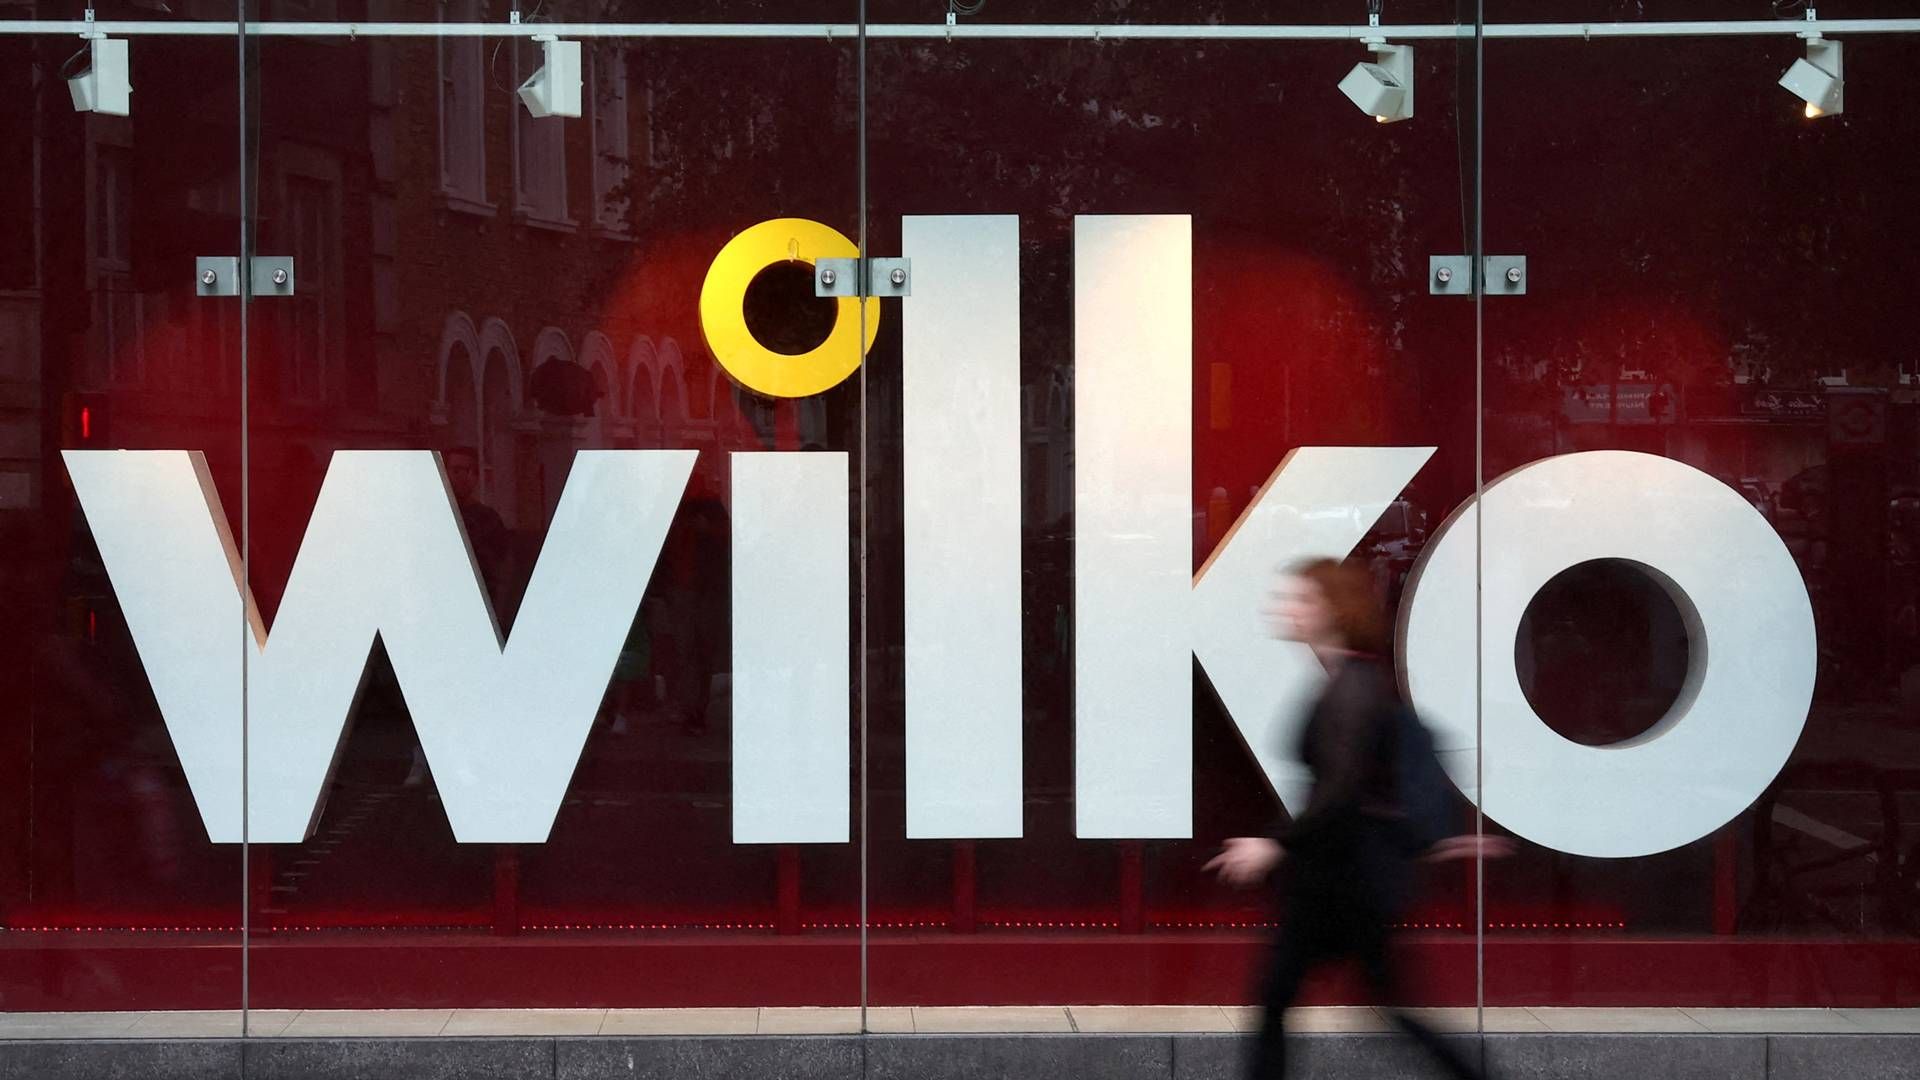 Wilko-kæden, der består af omkring 400 butikker, står til at blive væsentligt reduceret. | Foto: Toby Melville